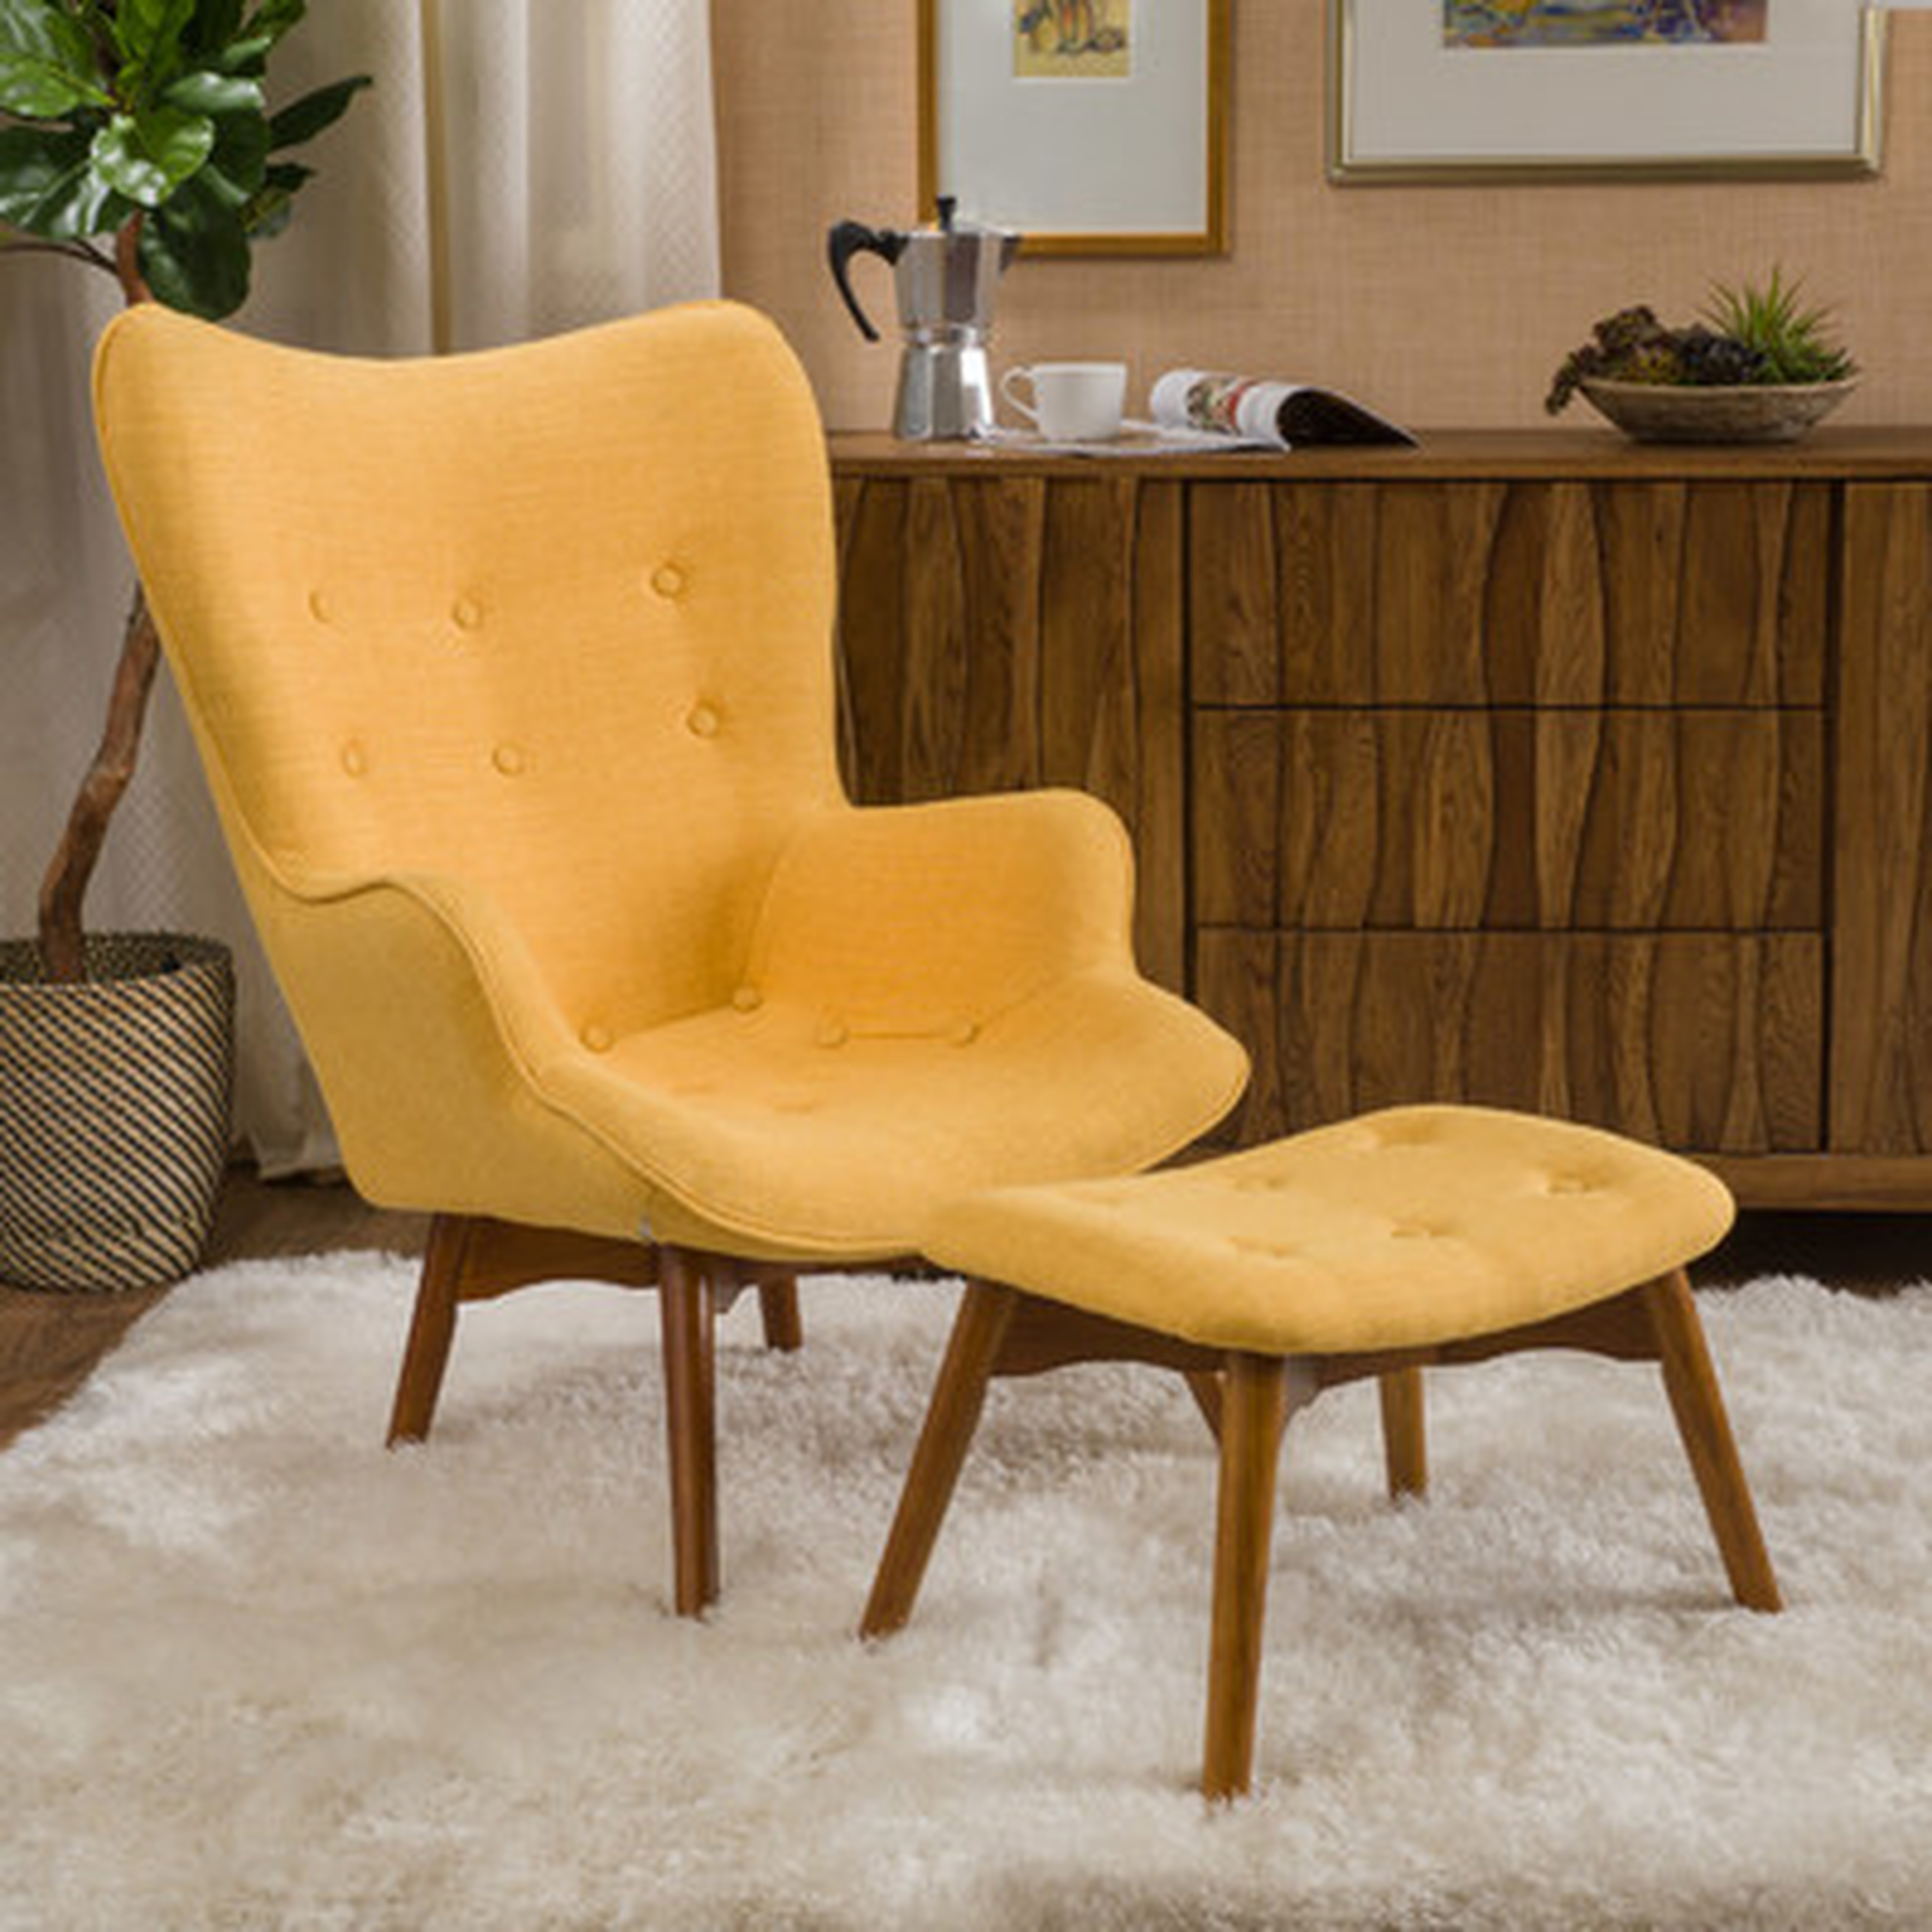 Canyon Vista Lounge Chair and Ottoman - Wayfair